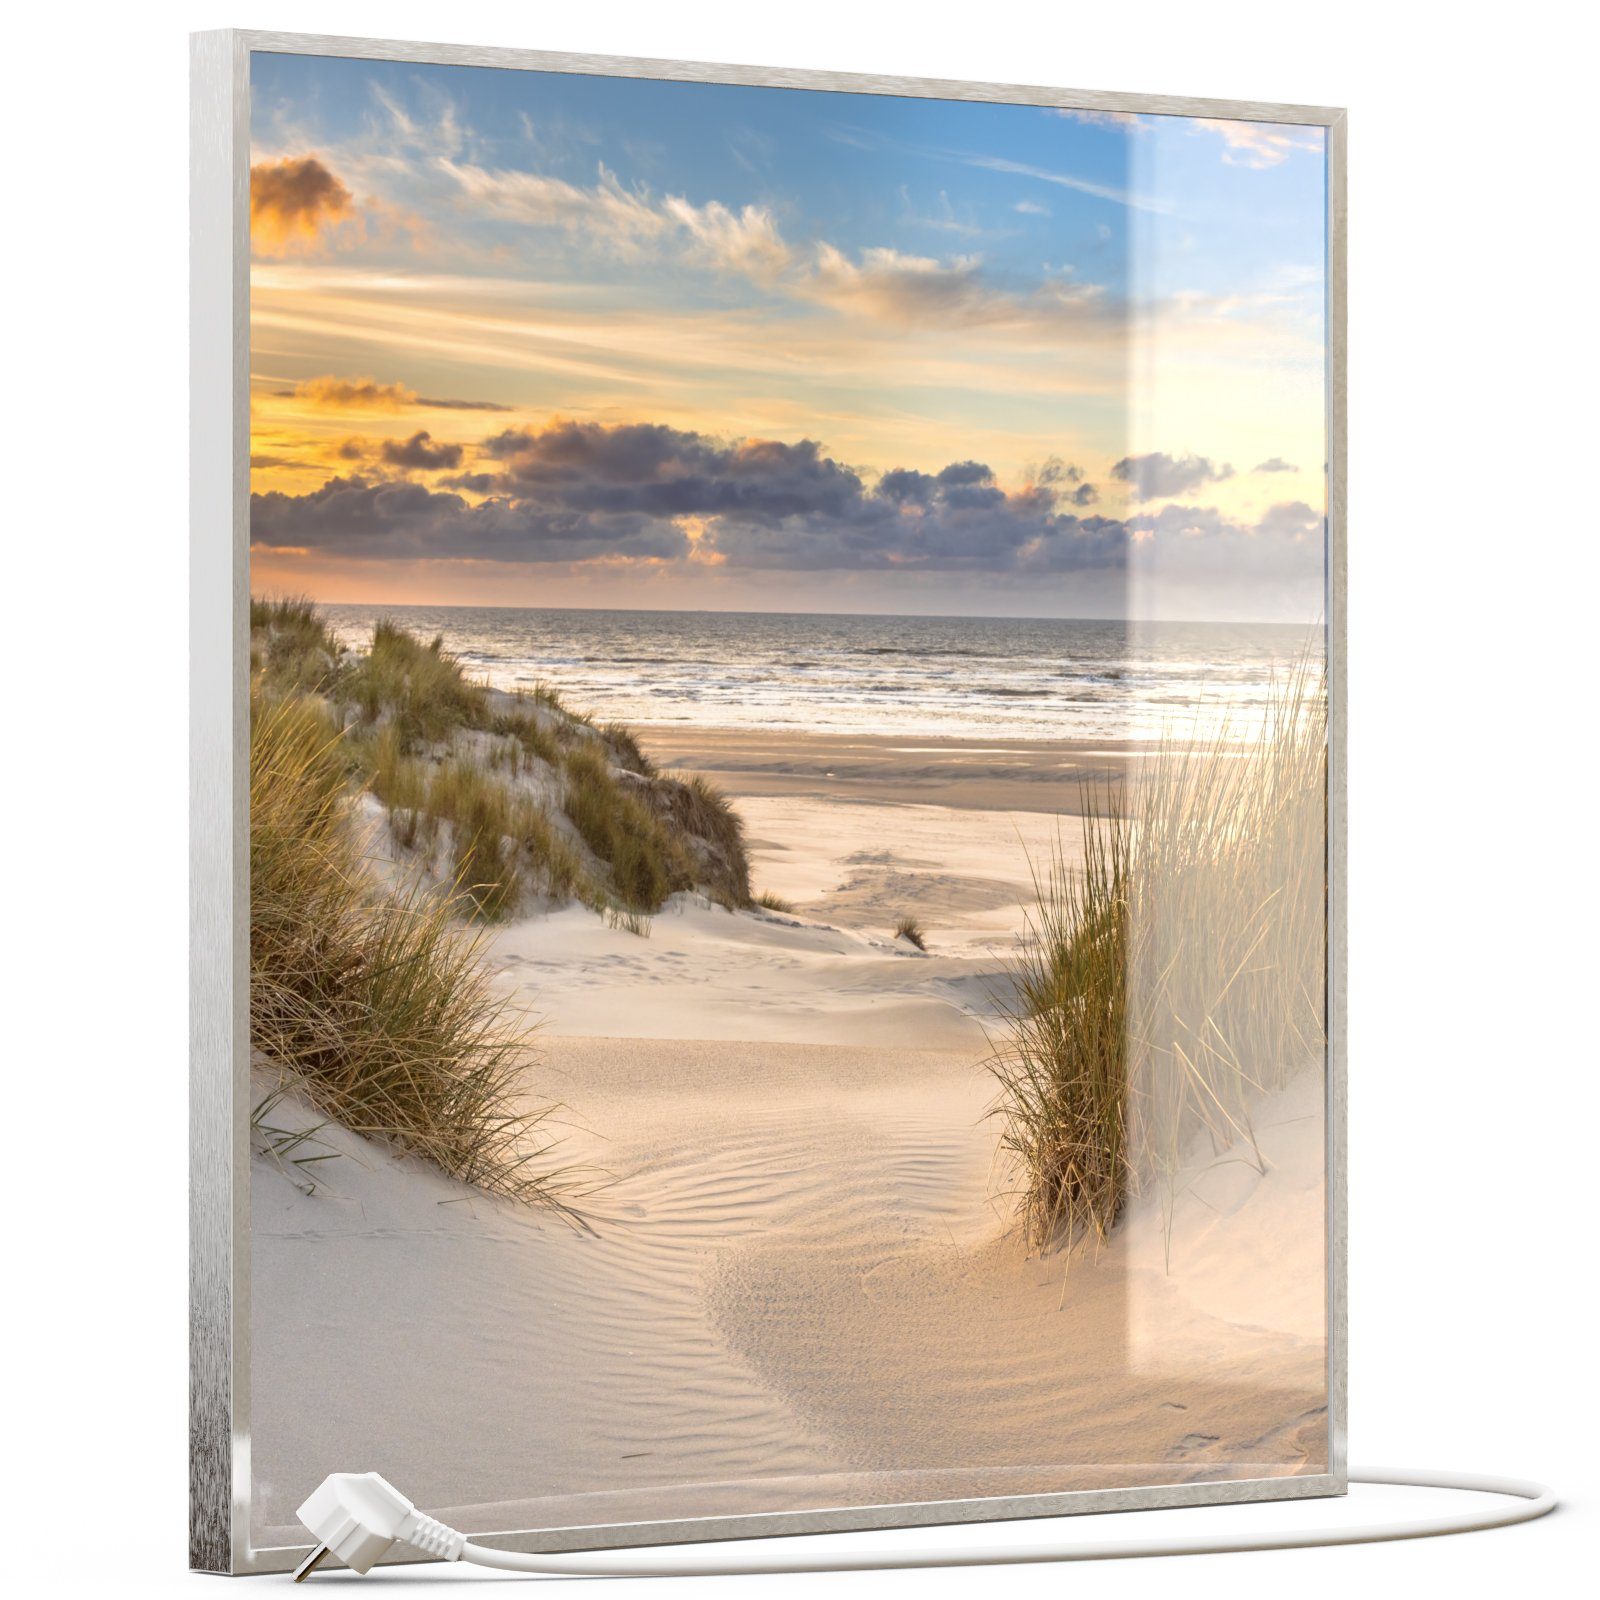 STEINFELD Heizsysteme Infrarotheizung, Glas Bild 350W-1200W, Inklusive Thermostat, 073 Sanddünen